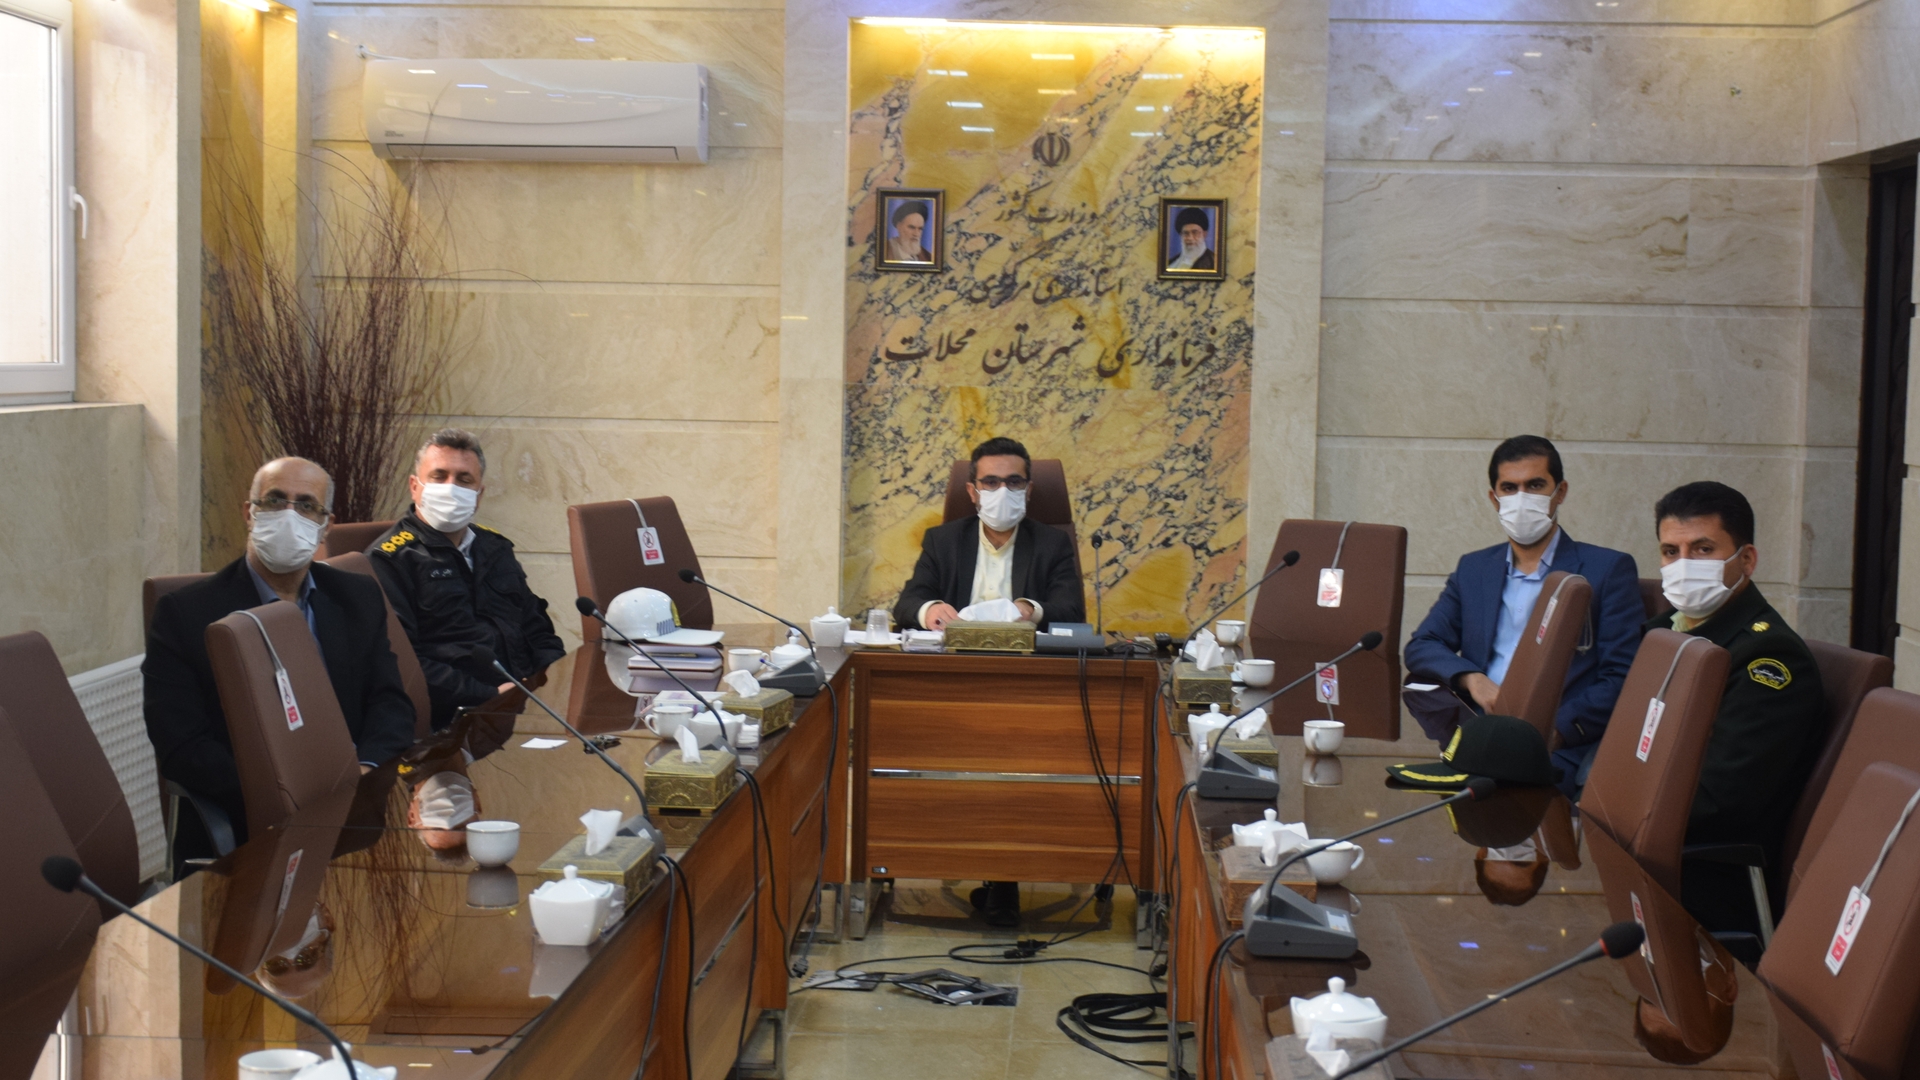 سومین جلسه شورای راهبردی تصادفات استان به ریاست دکتر مخلص الائمه استاندار مرکزی برگزار گردید.